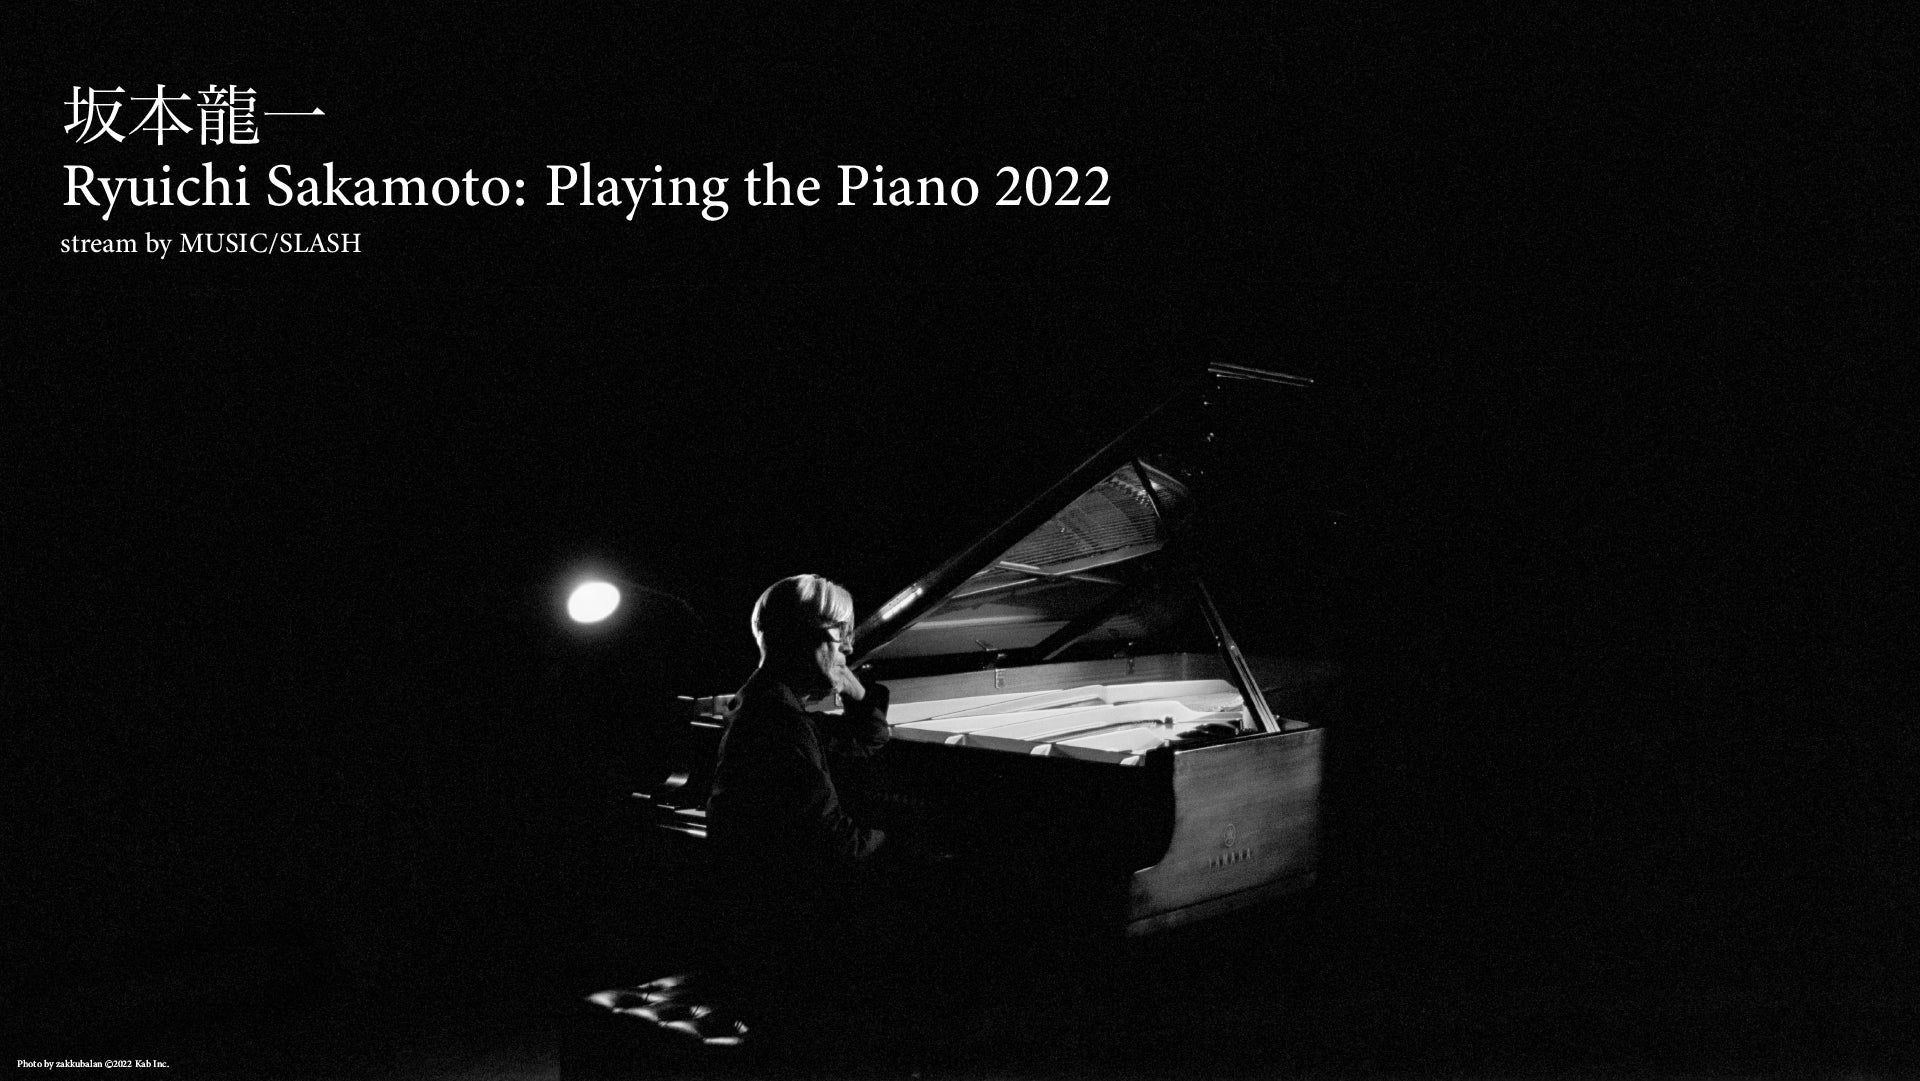 坂本龍一 ピアノ・ソロ・コンサート『Ryuichi Sakamoto: Playing the Piano 2022』をMSUIC/SLASHが世界配信決定! (事前収録済み映像配信)